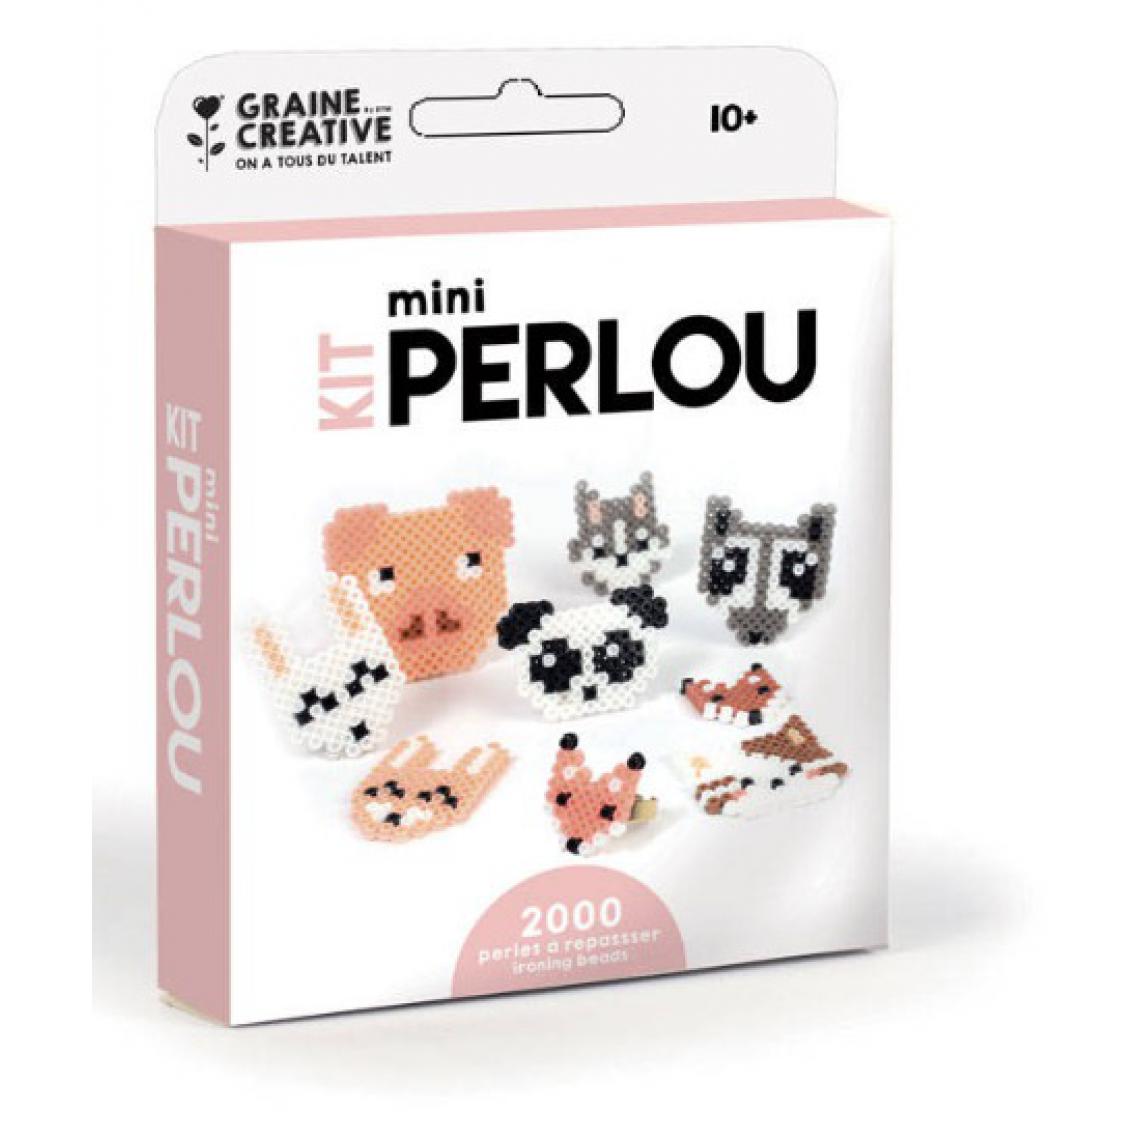 Graines Creatives - Kit mini perlou 2000 perles animaux - Perles